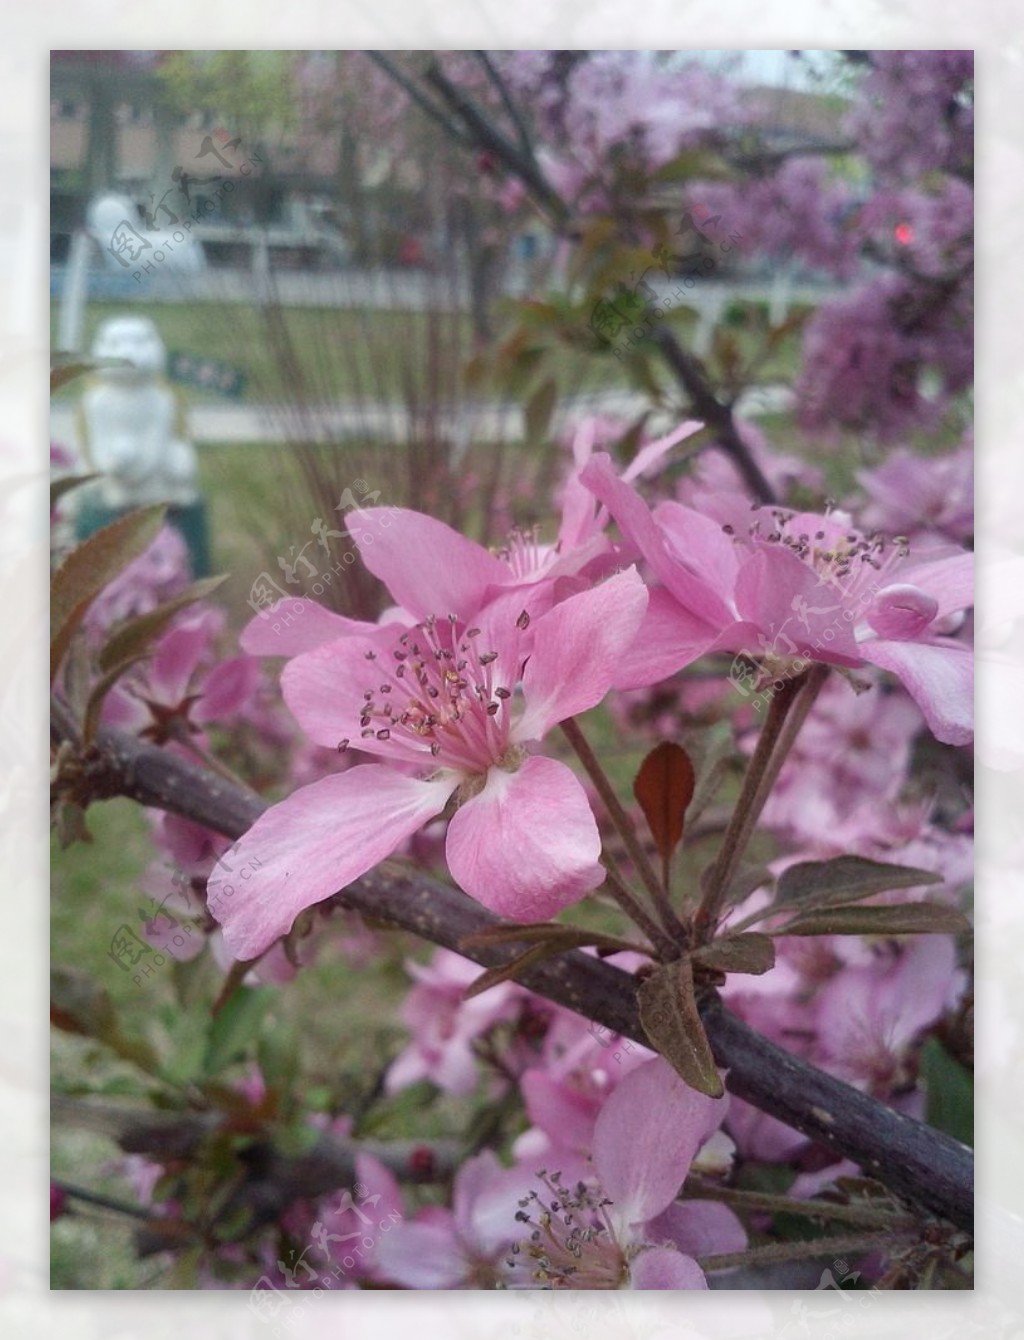 桃树花图片